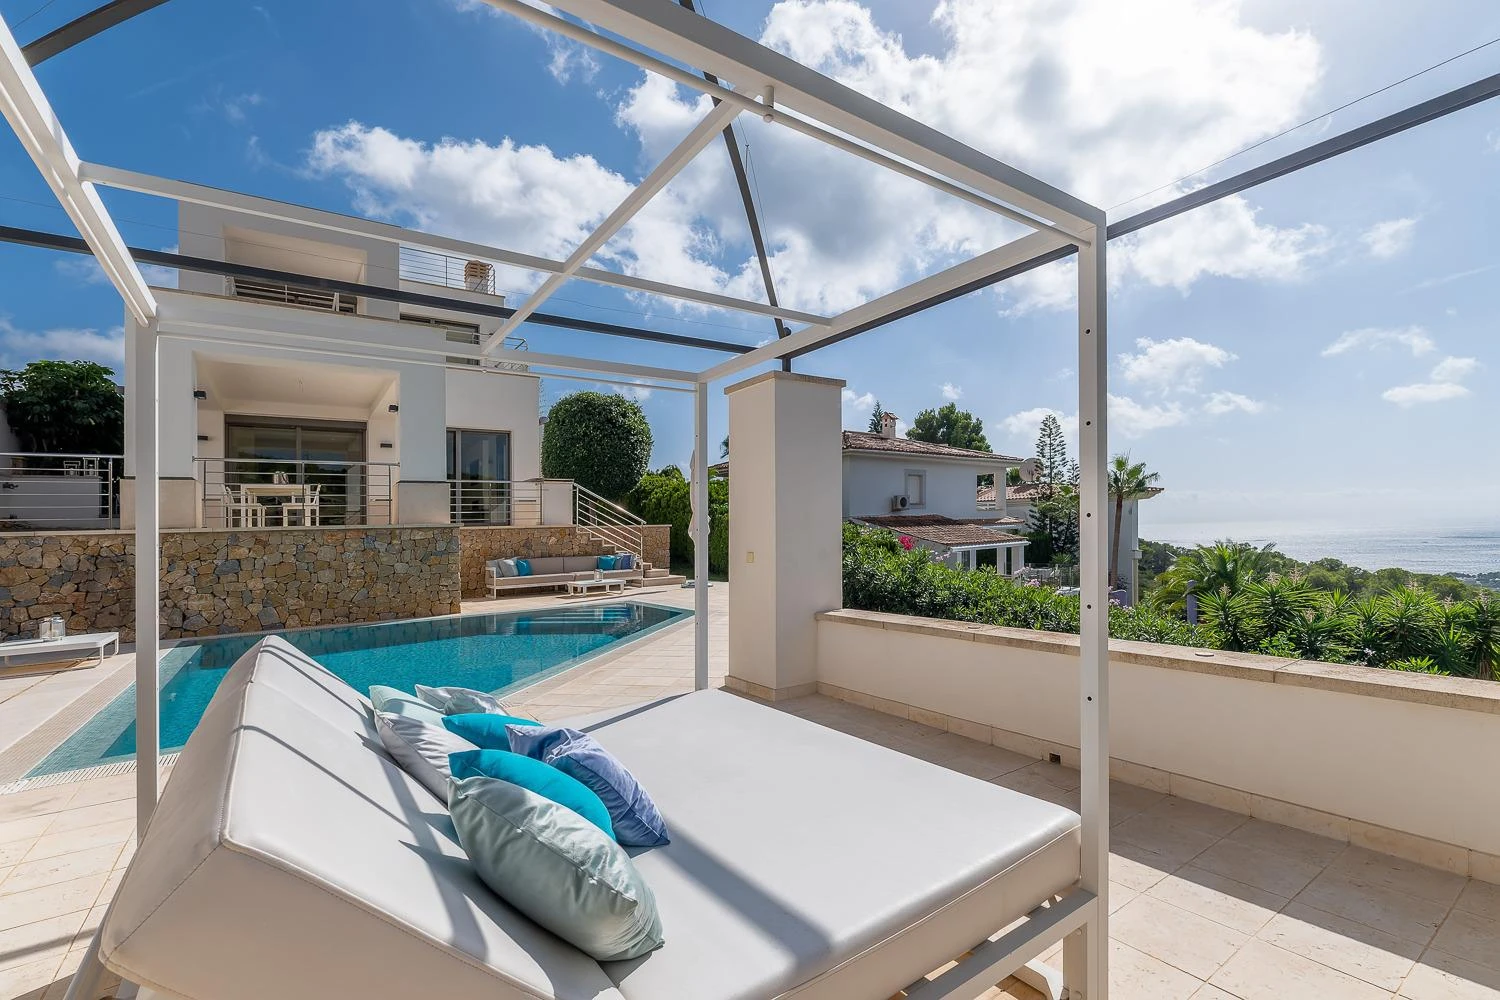 Villa im mediterranen Stil mit herrlichem Meerblick und Sonnenuntergängen in Costa den Blanes